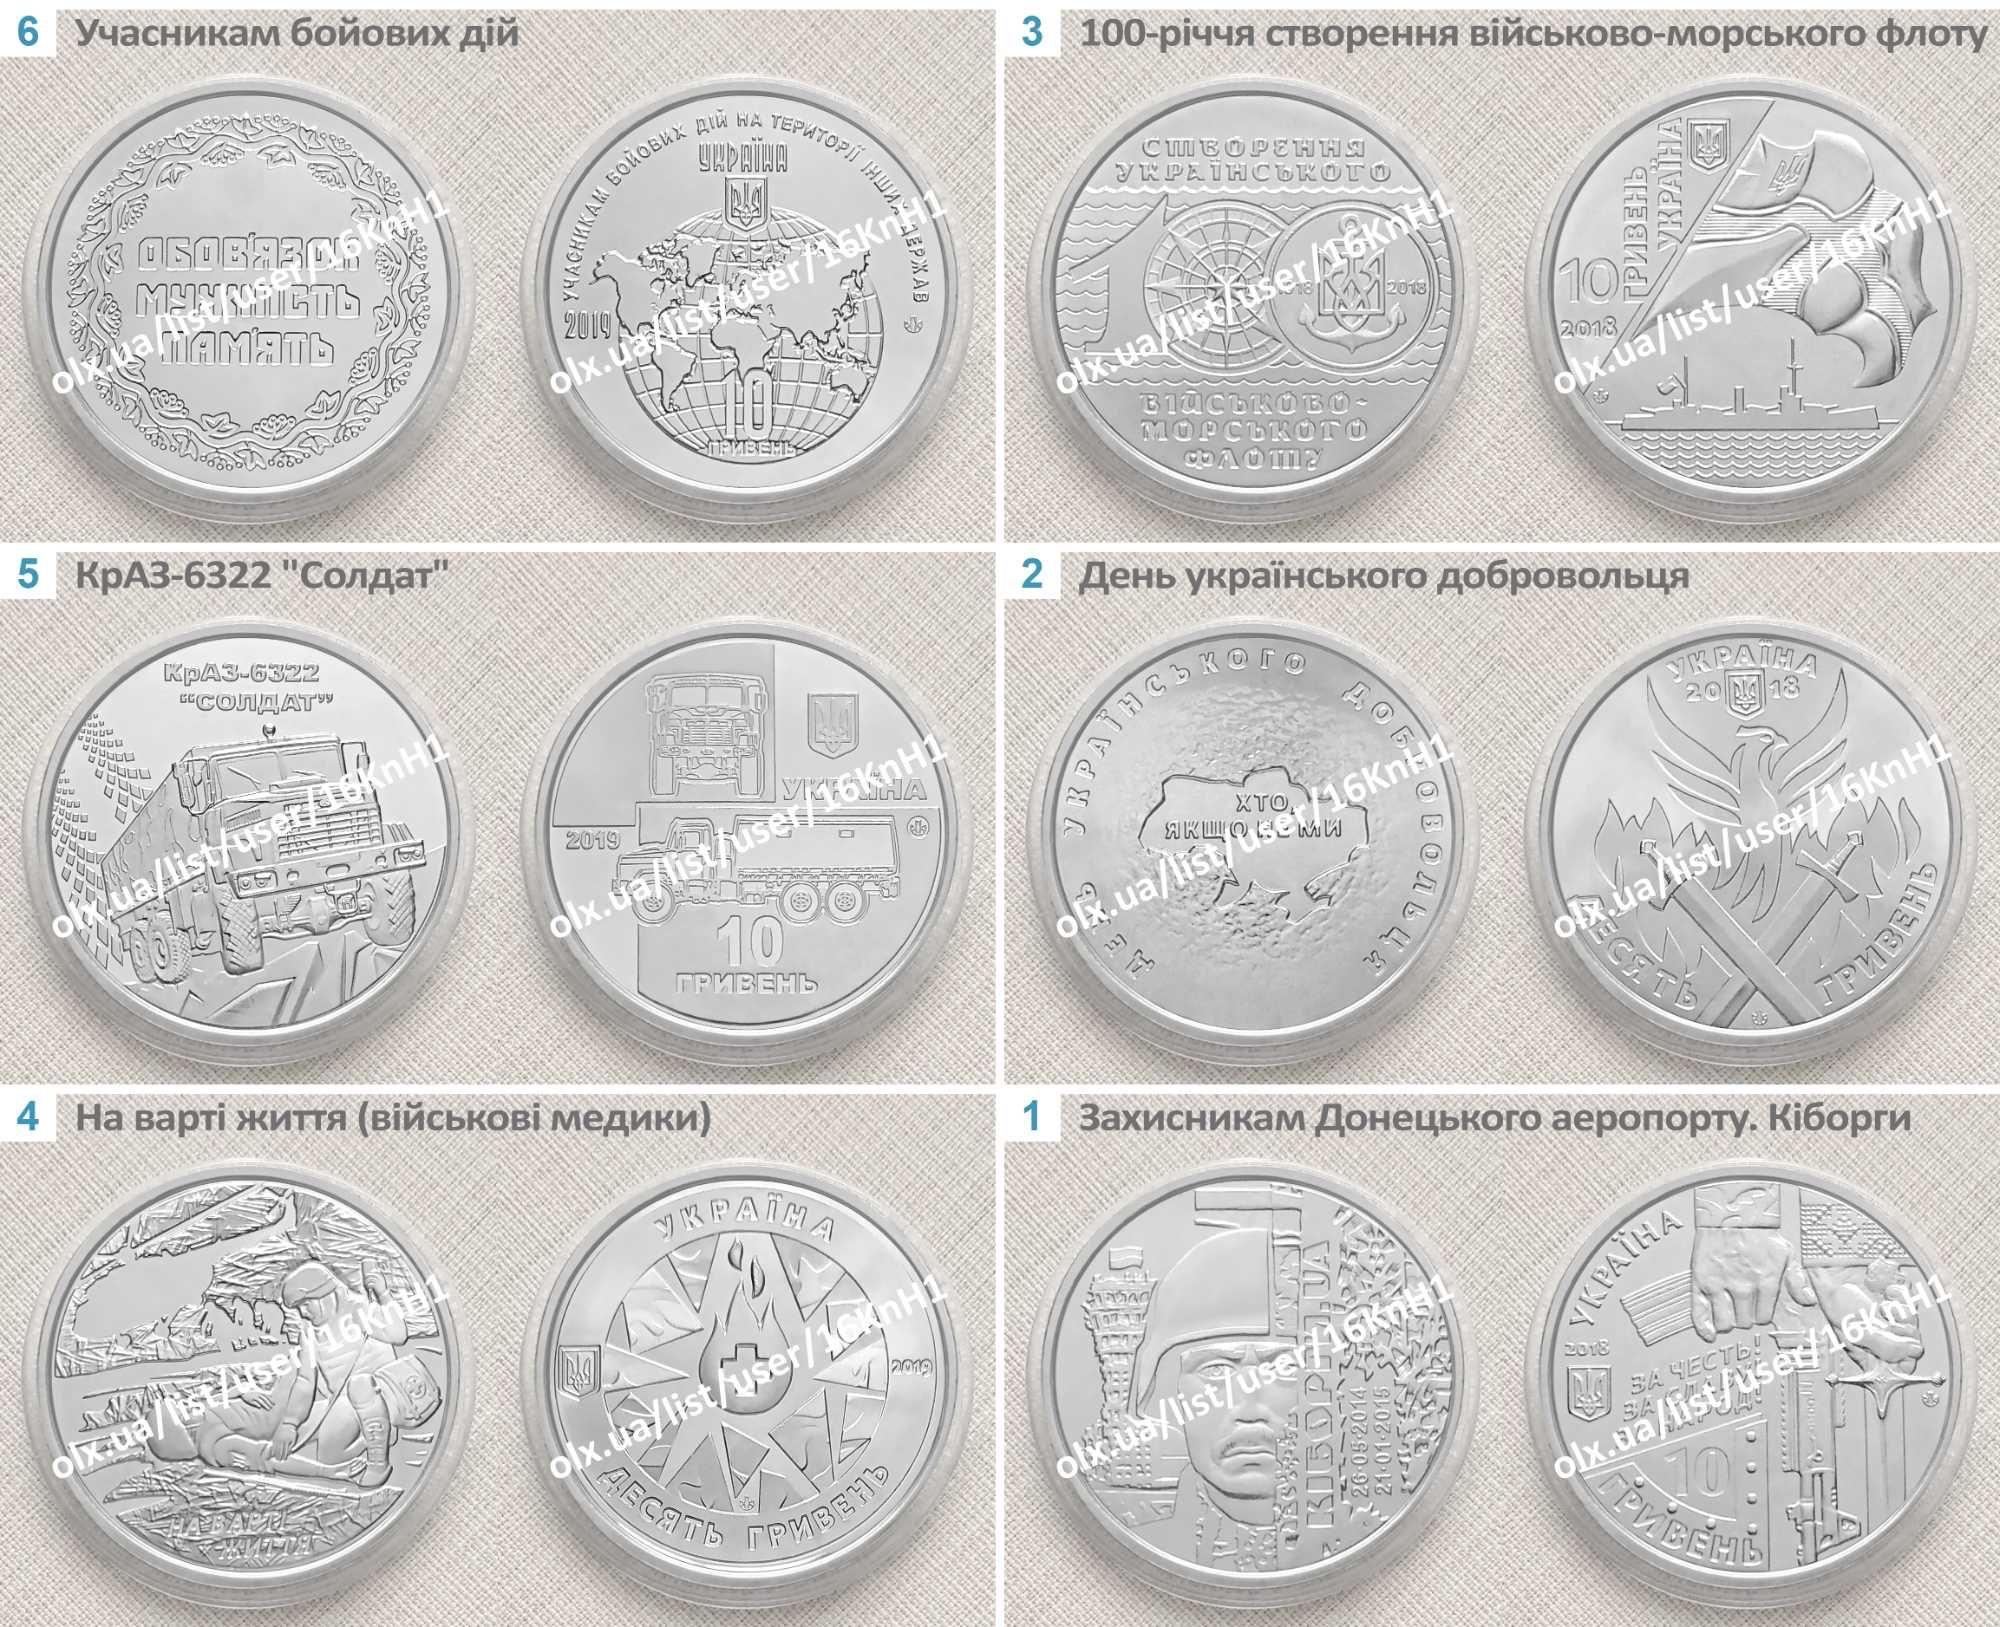 Монети ЗСУ "10 грн" повний комплект (19шт) — у капсулах